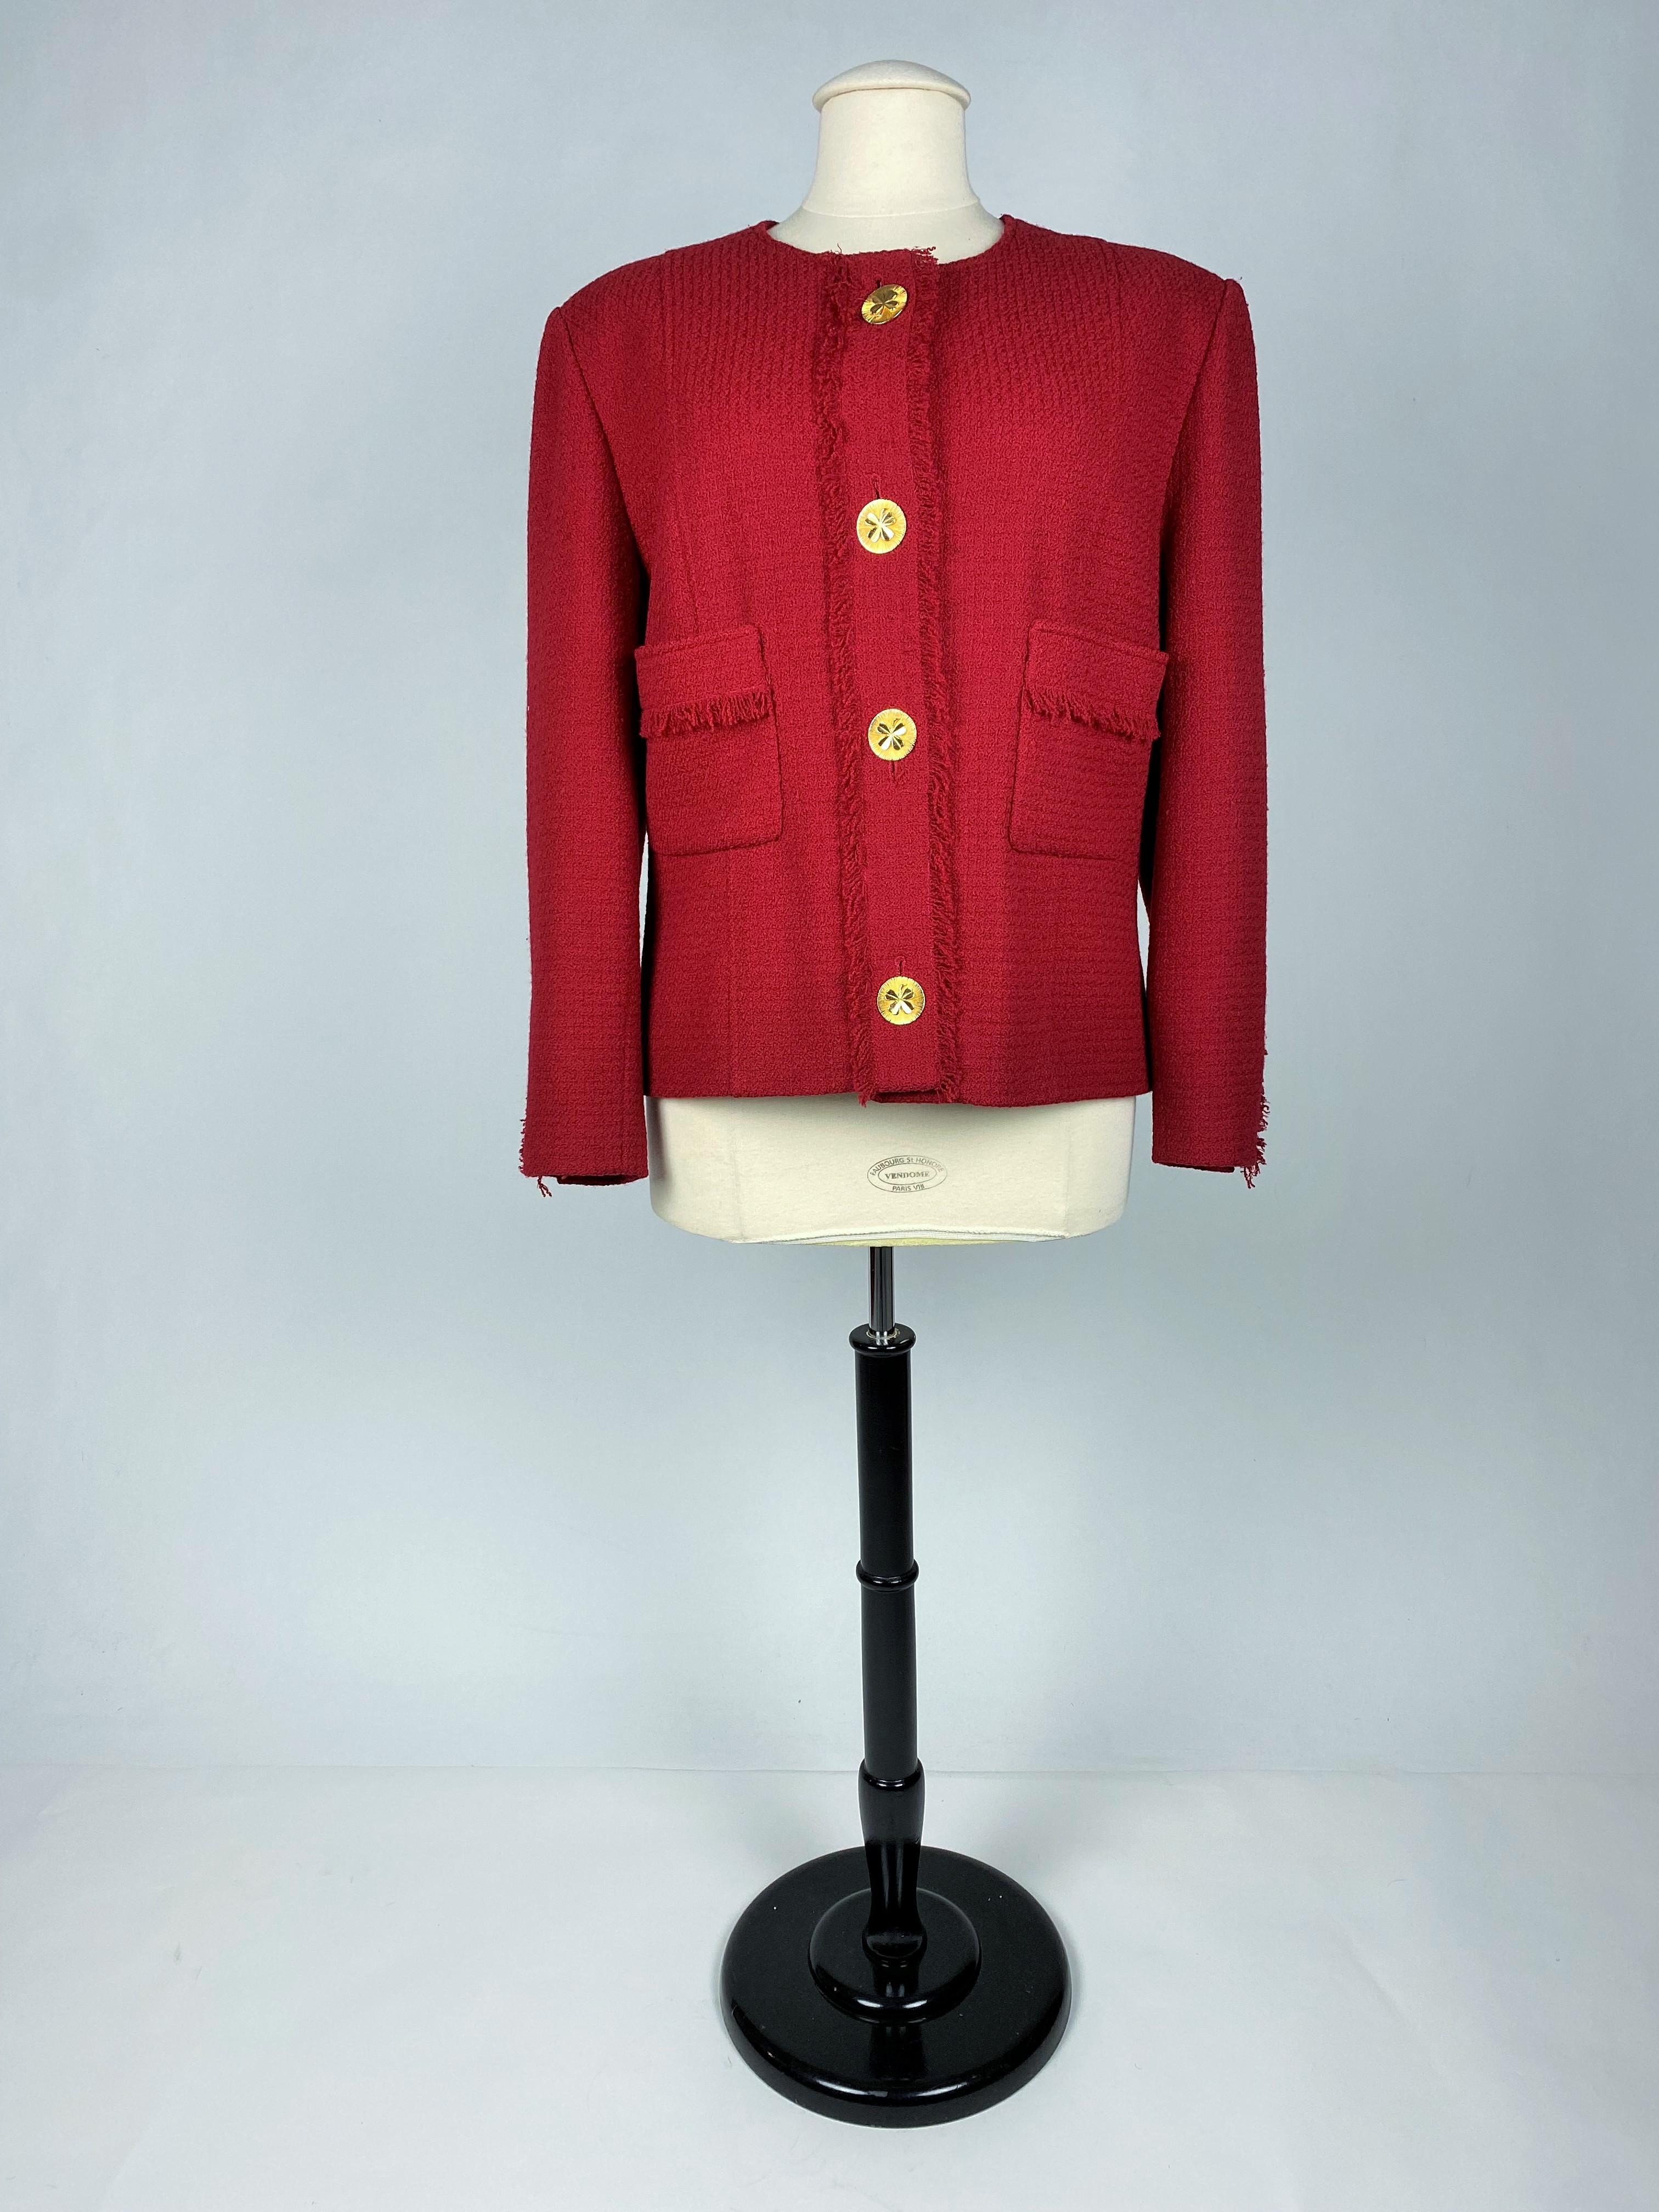 CIRCA 1995-2000
Frankreich

Elegante Anzugjacke von Chanel Boutique, die unter der Leitung von Karl Lagerfed aus roter Mohairwolle gefertigt wurde und aus den späten 1990er Jahren stammt. Gerade Jacke mit zwei Taschen mit Fransenpatten und einer